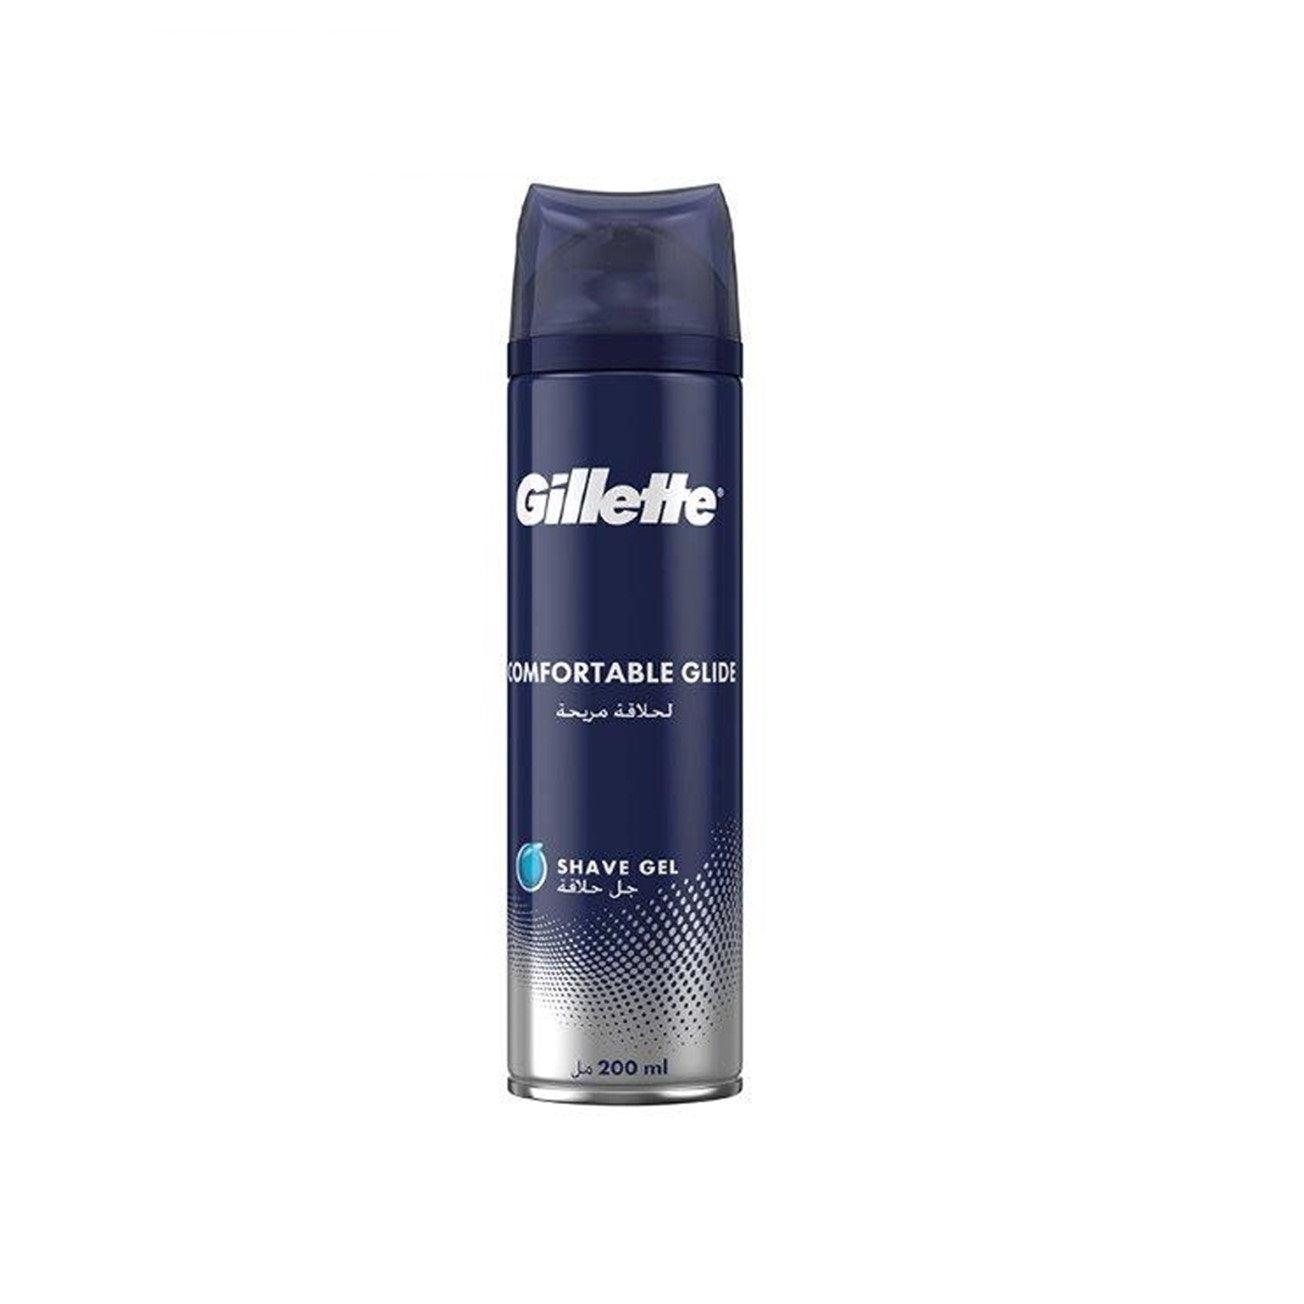 Gillette - Comfortable glide Shave Gel - ORAS OFFICIAL